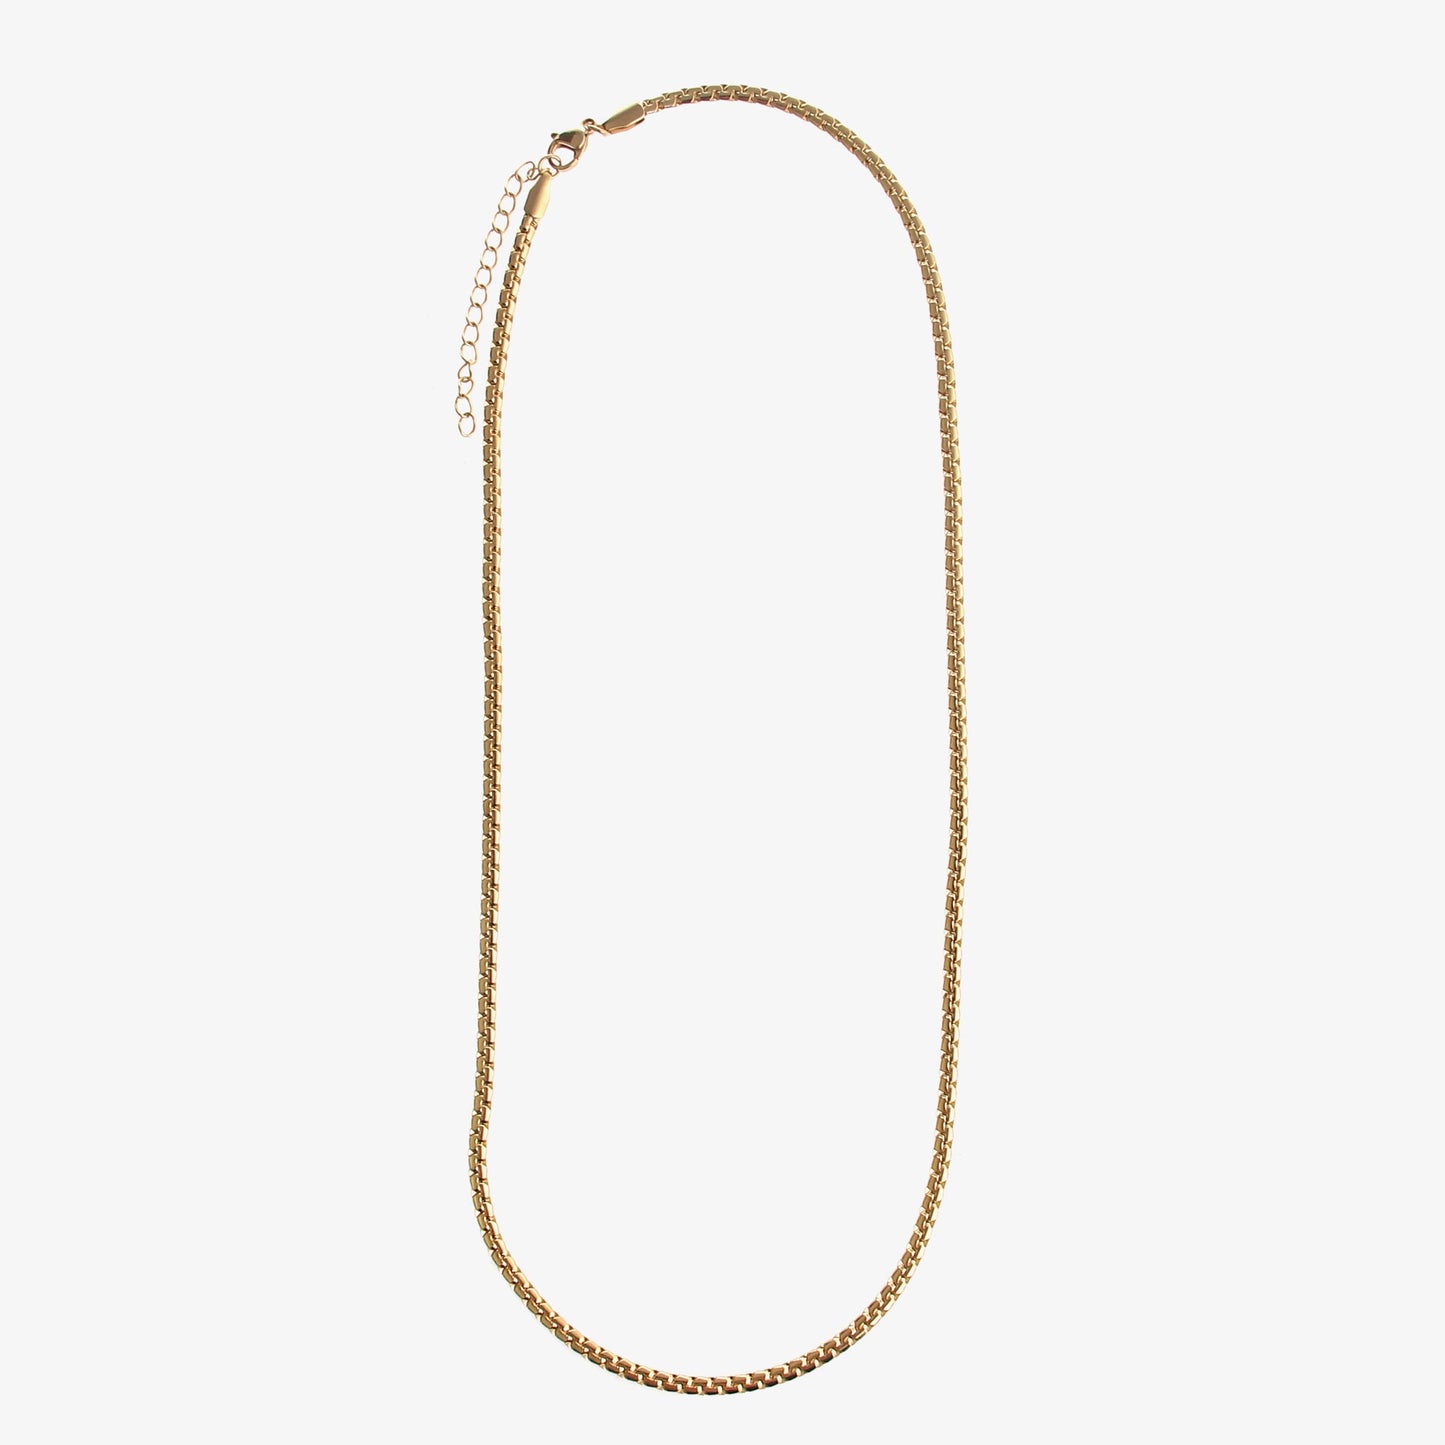 Embossed Cuban Necklace For Men - NextthinkShop0CJLX174929604DW0